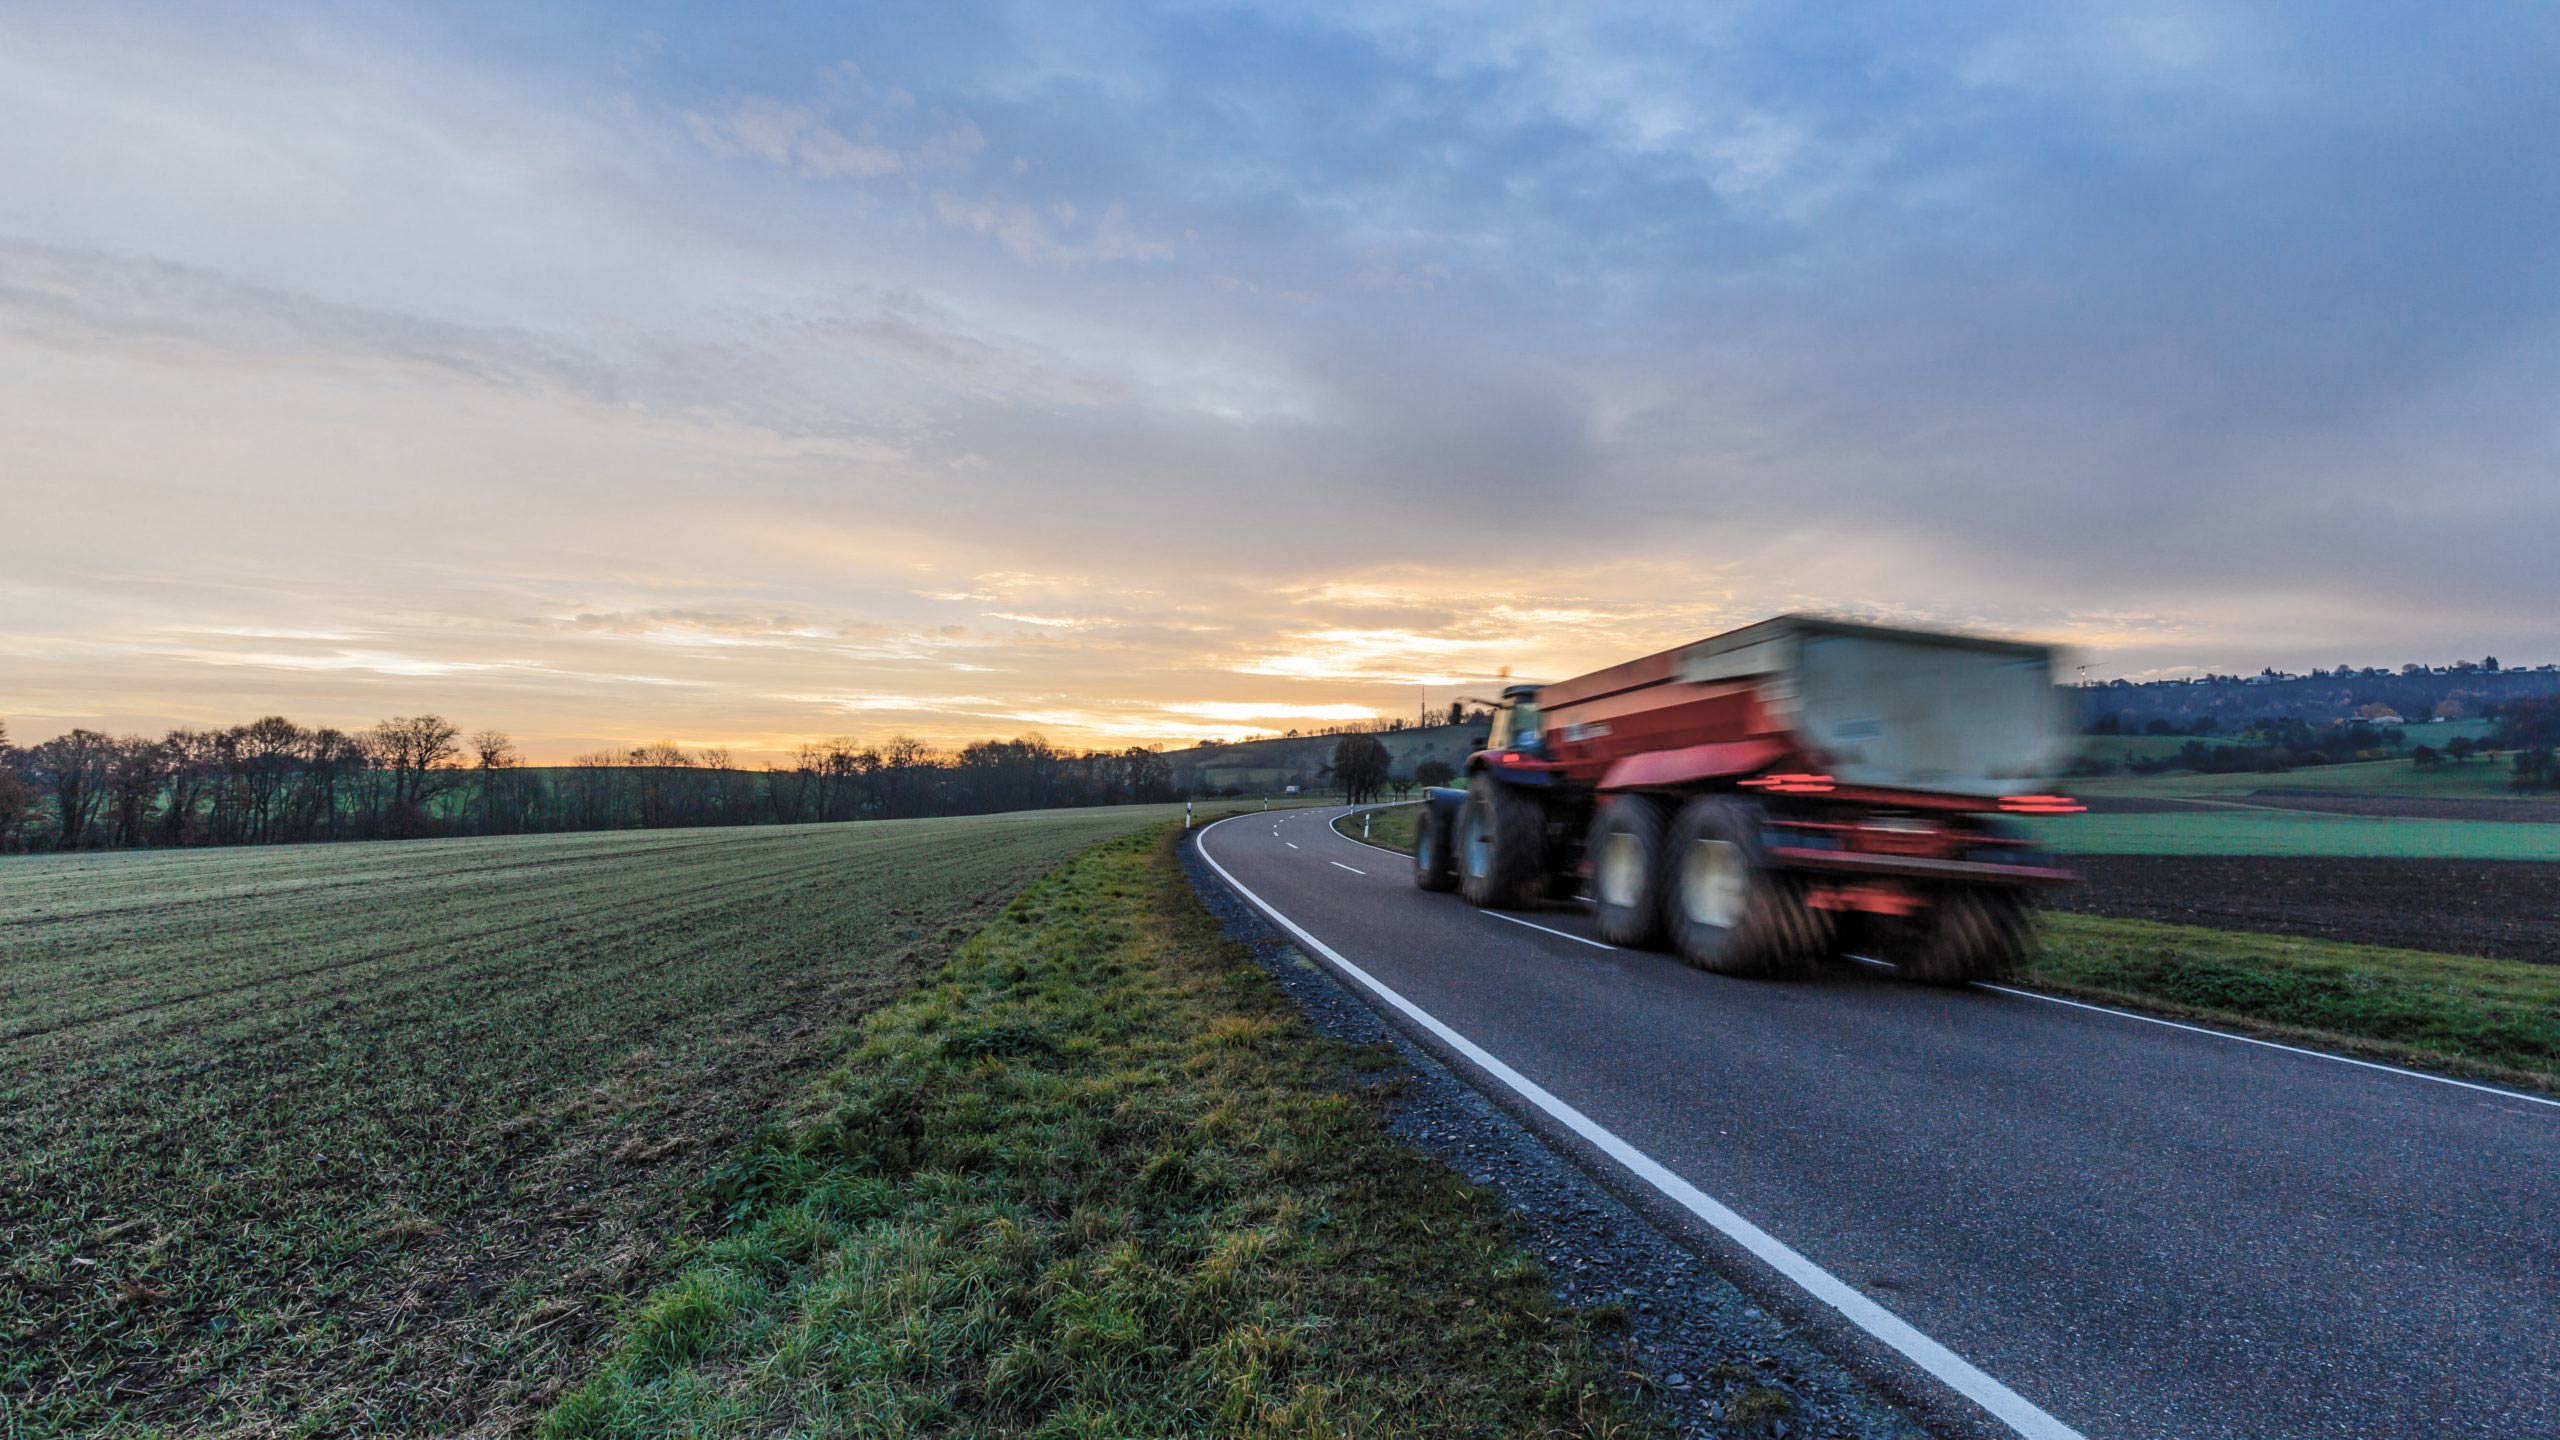 Færre landbrugsmaskiner på landevejene i Dronninglund-området. Det er et af resultaterne af den omfattende jordfordeling, hvor i alt 62 landmænd har byttet jorde med hinanden. Det minimerer også CO2-udslip